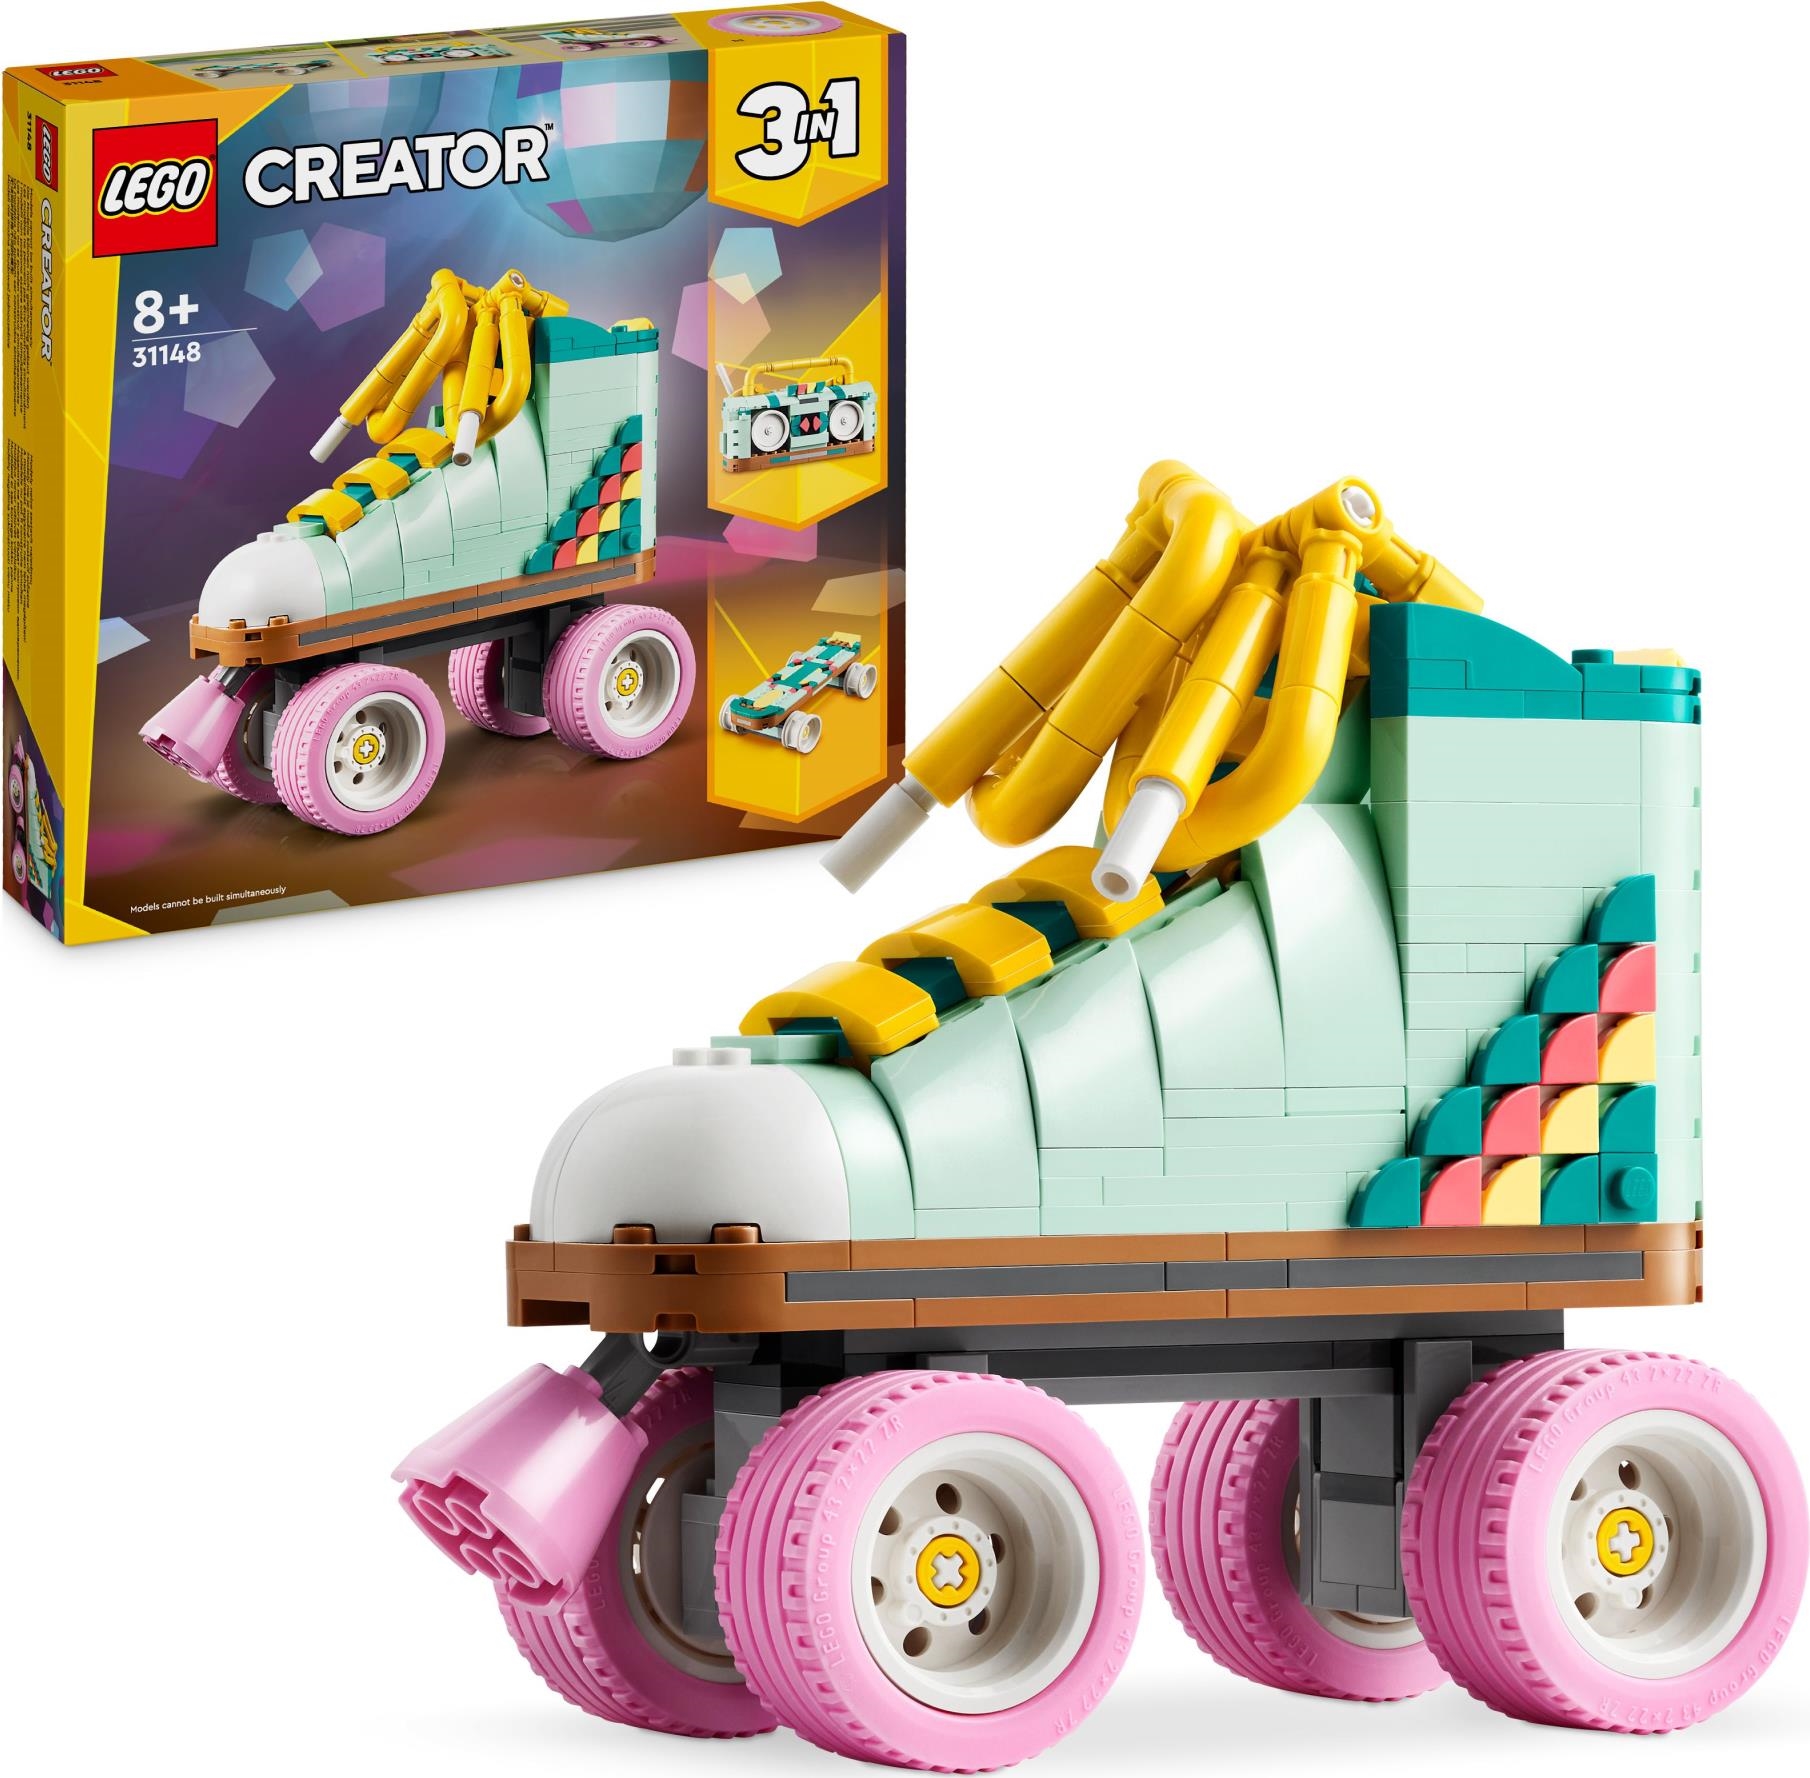 Lego: 31148 - Creator - Pattini A Rotelle Retro